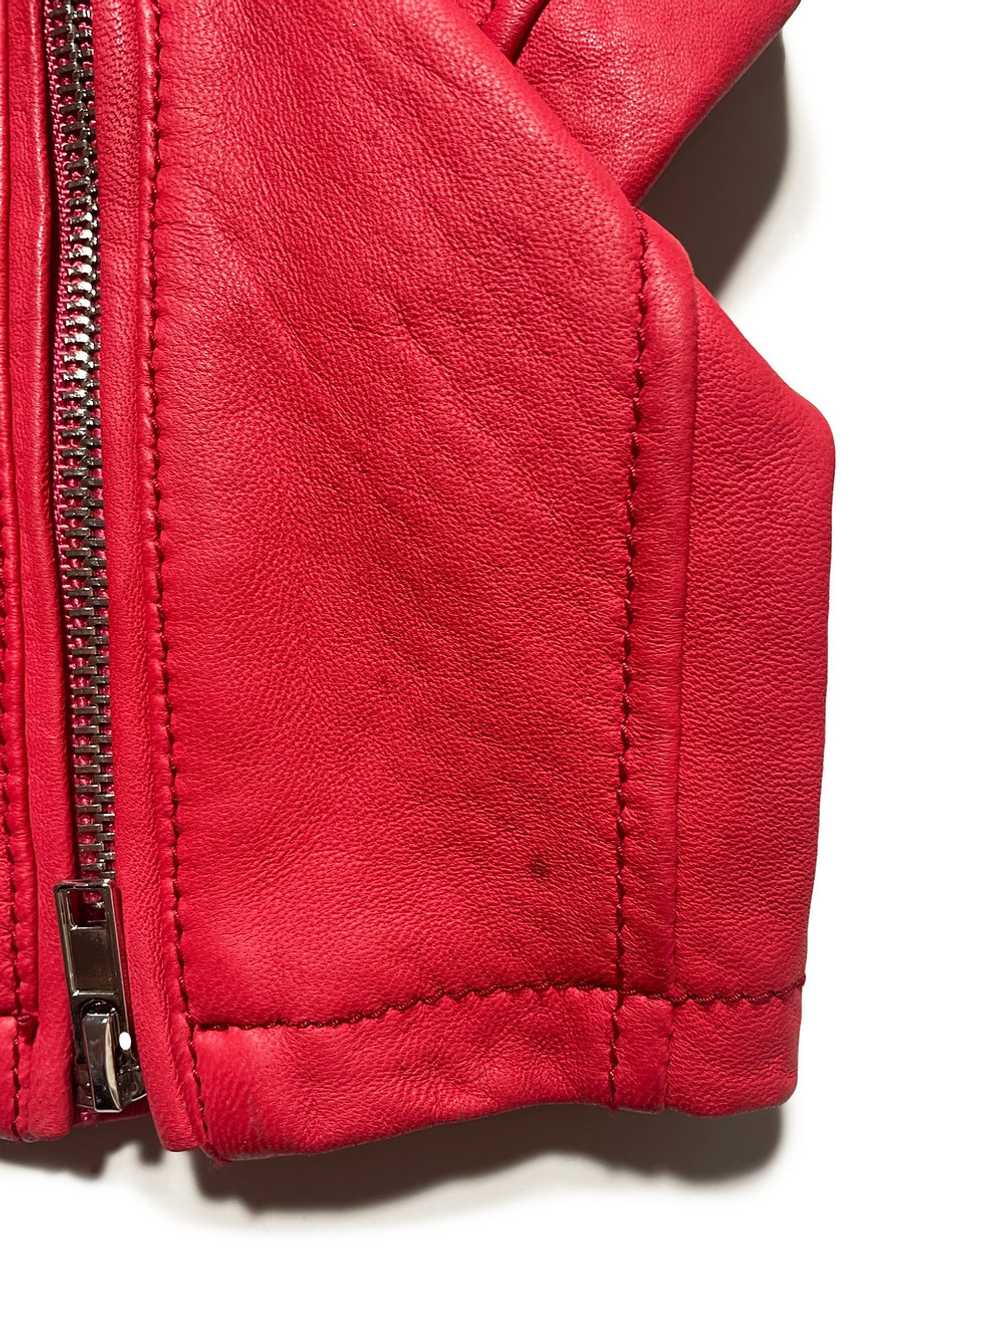 Maje Bright Red Leather Jacket UK 12 - image 4